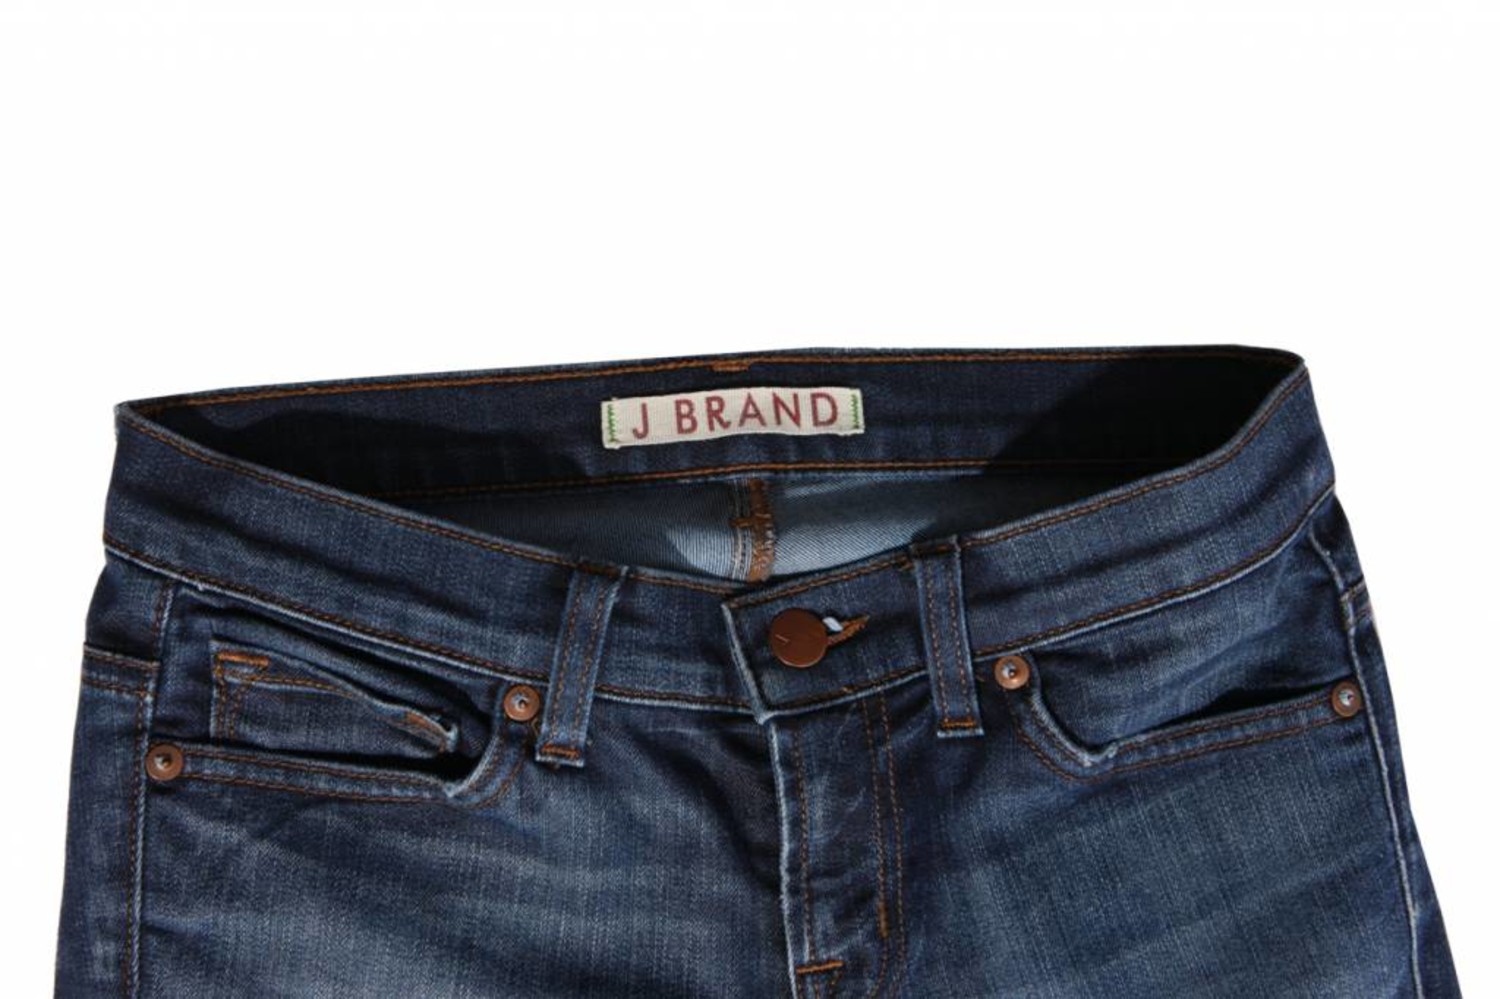 J Brand, Jeans